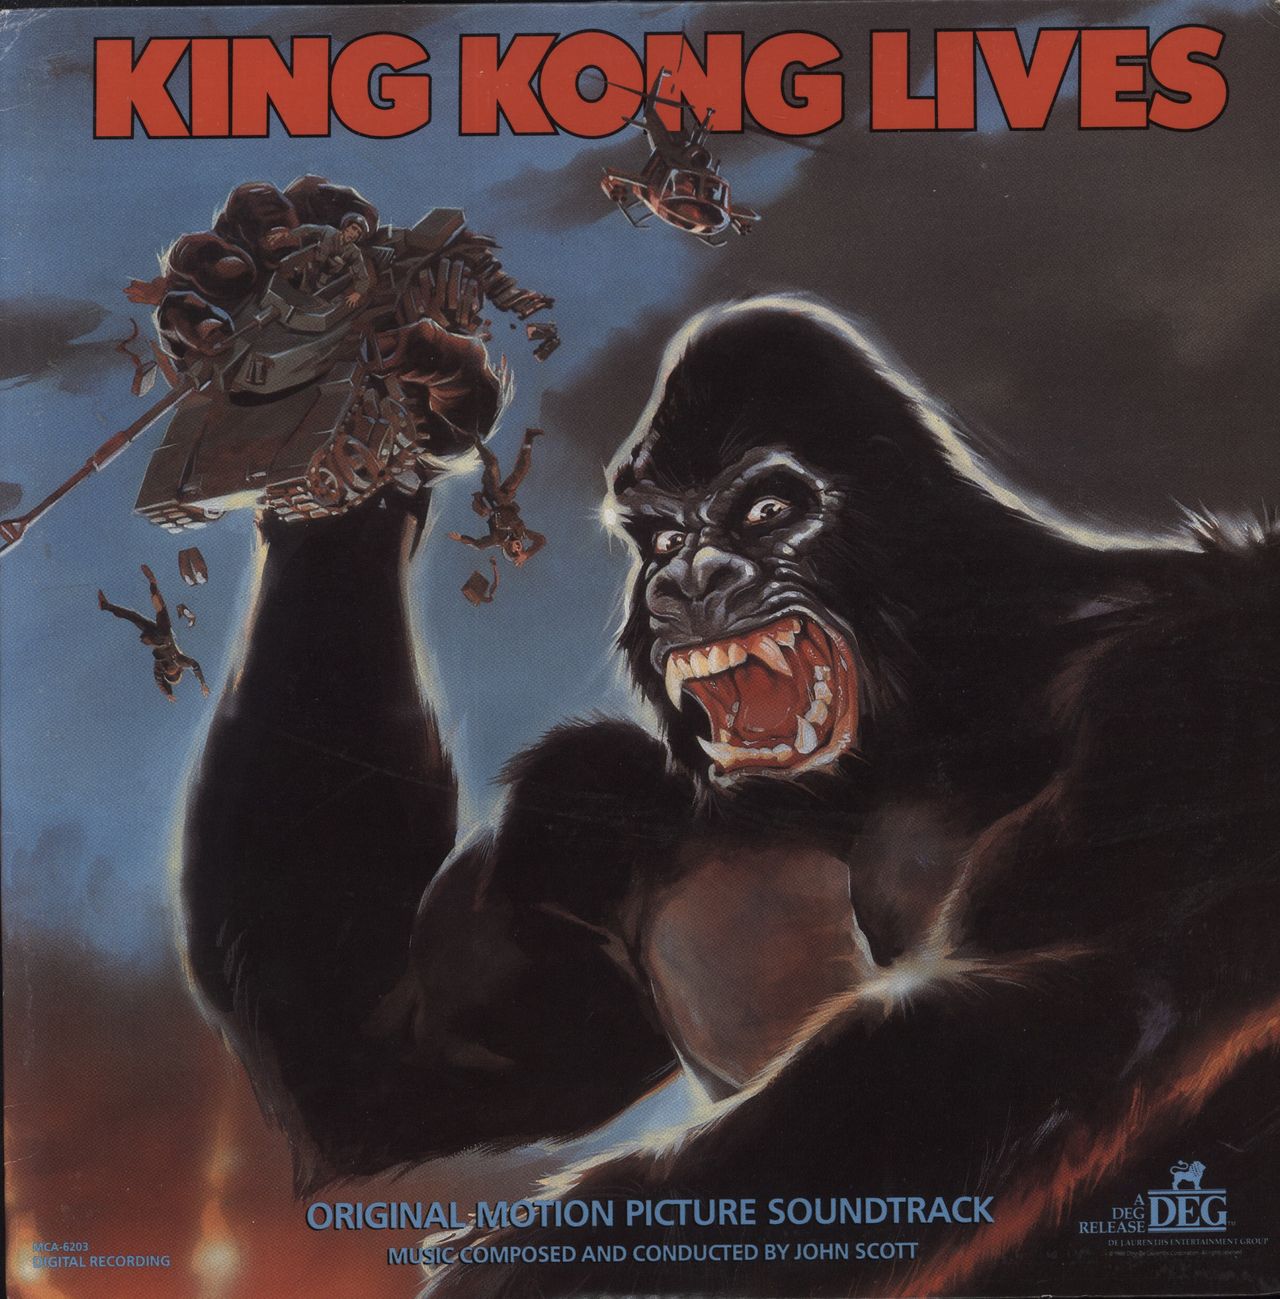 They Live – Original Motion Picture Soundtrack LP